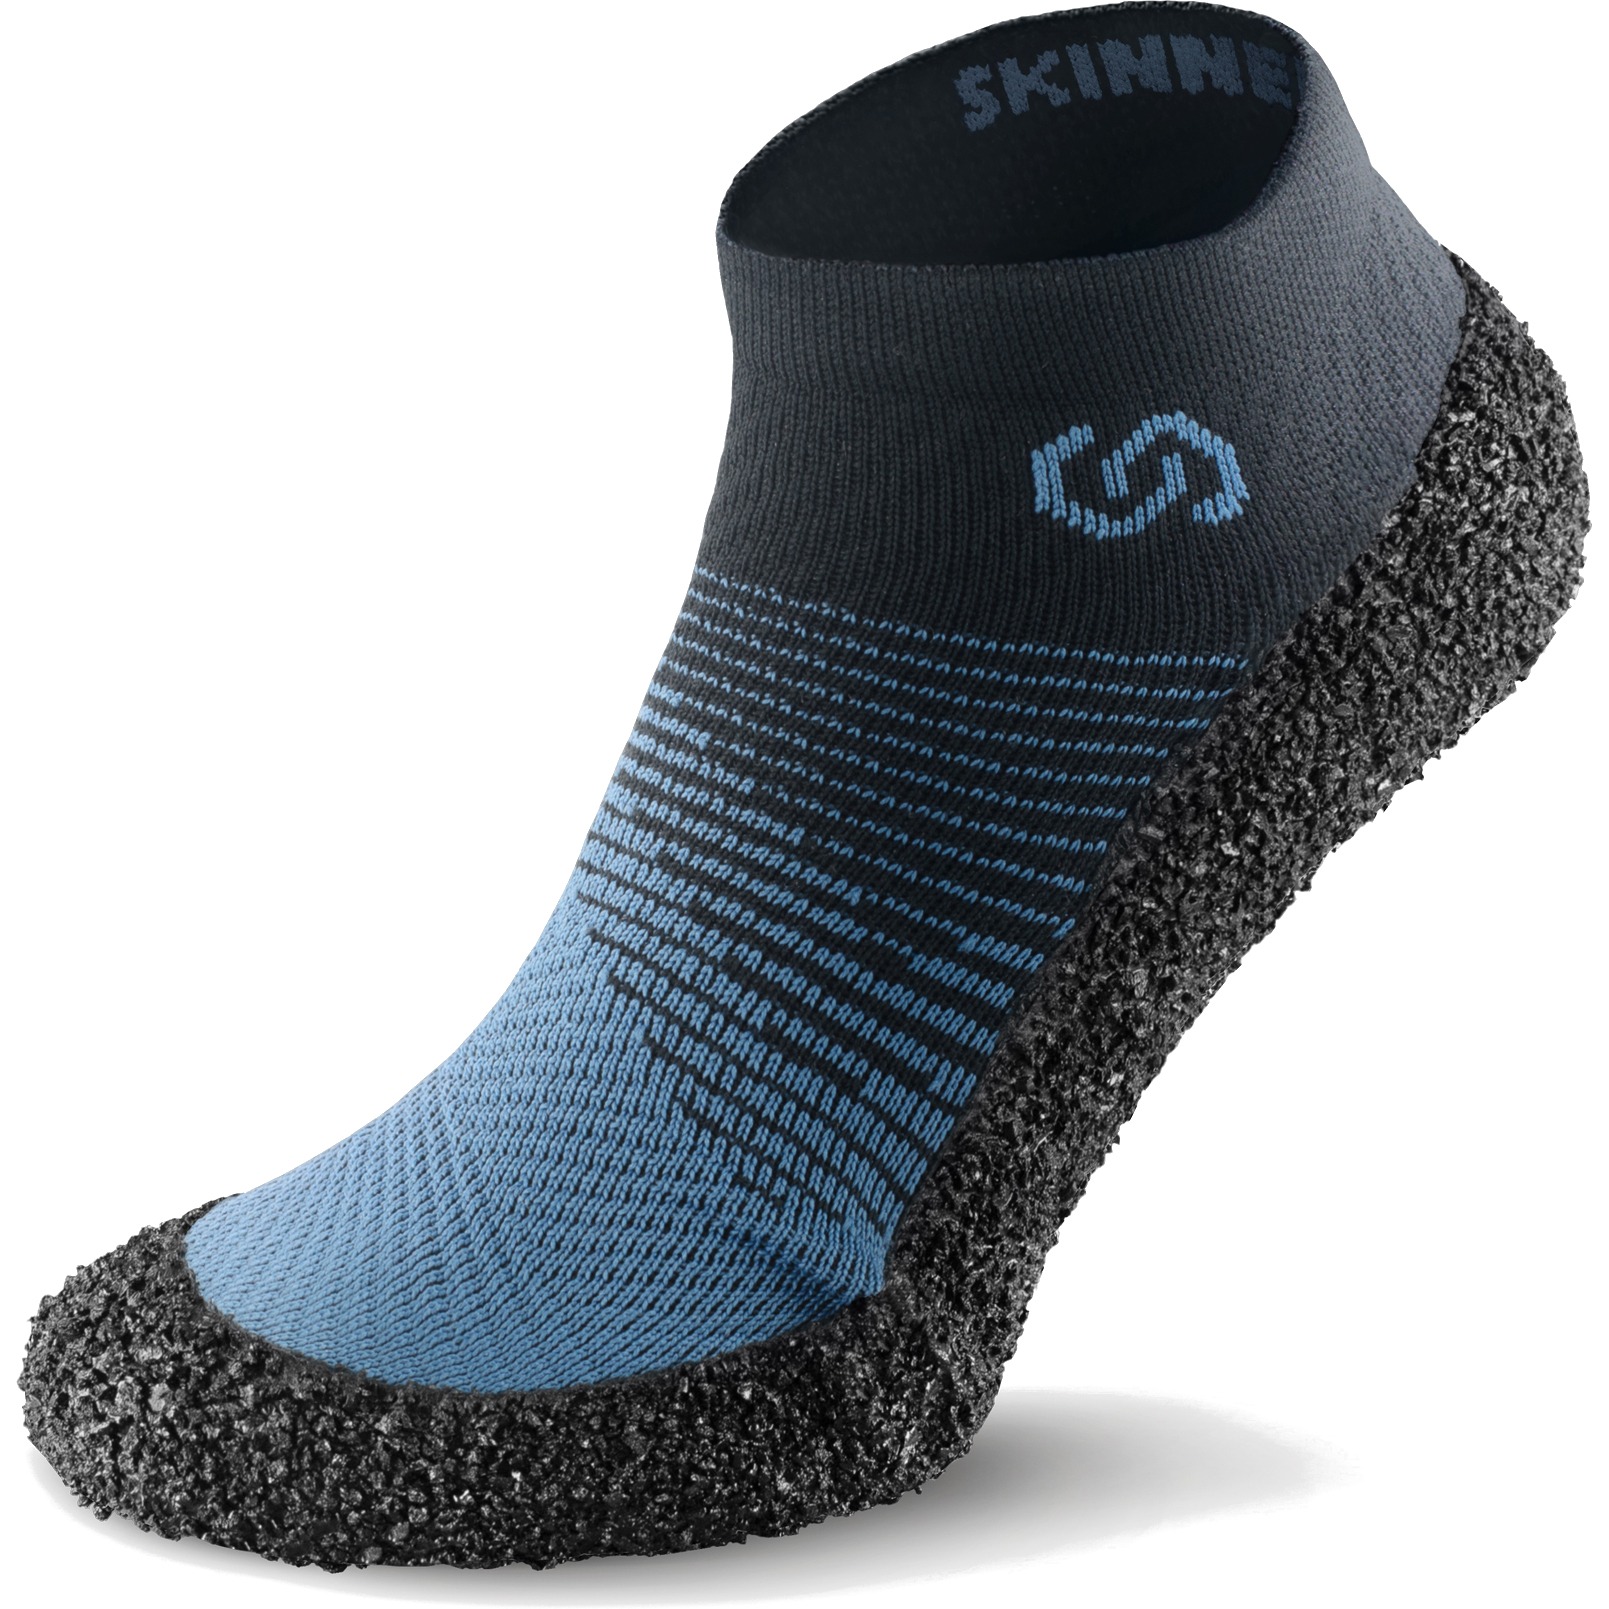 Productfoto van Skinners Sock Shoes 2.0 - marine